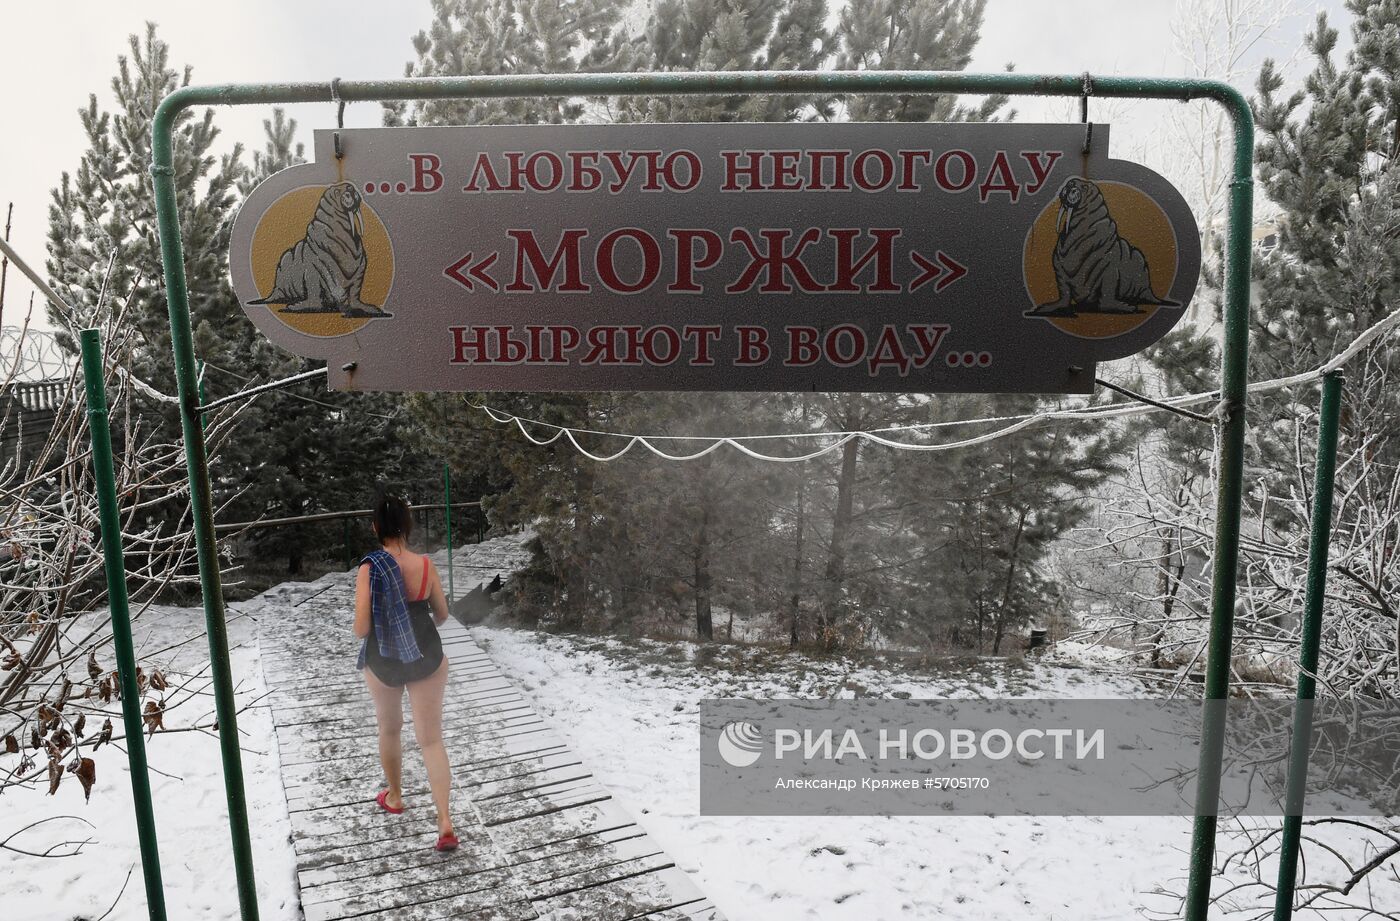 Сильные морозы в Красноярском крае